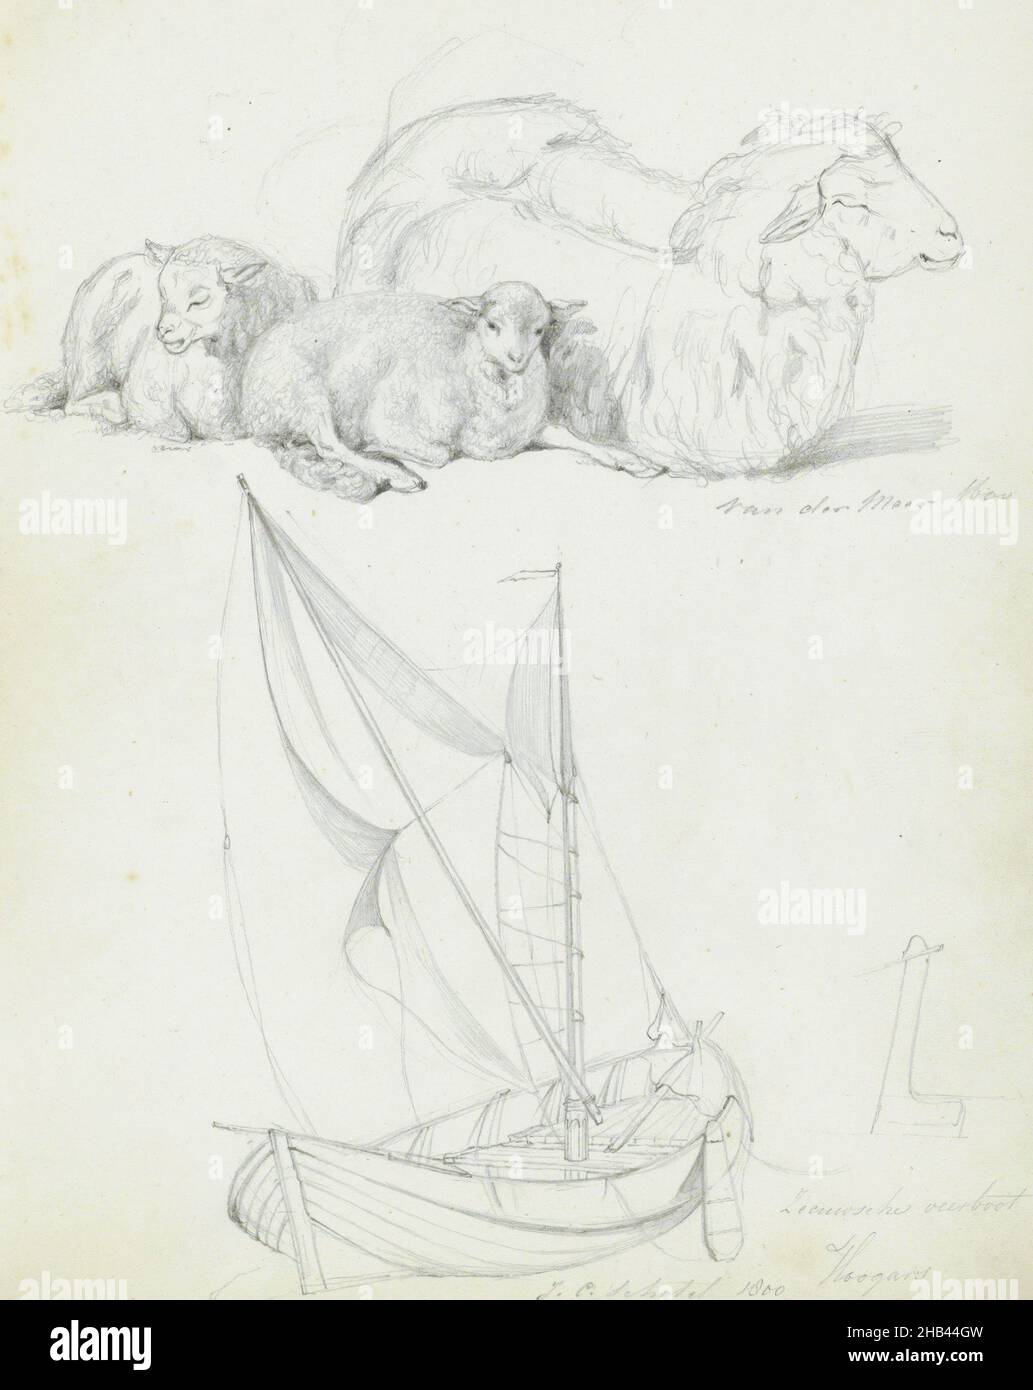 Foglio 8 recto da un libro di schizzo con 21 fogli, pecora e un ferry boat Zeeland, dopo Jan van der Meer (II), 1820 - 1872 Foto Stock